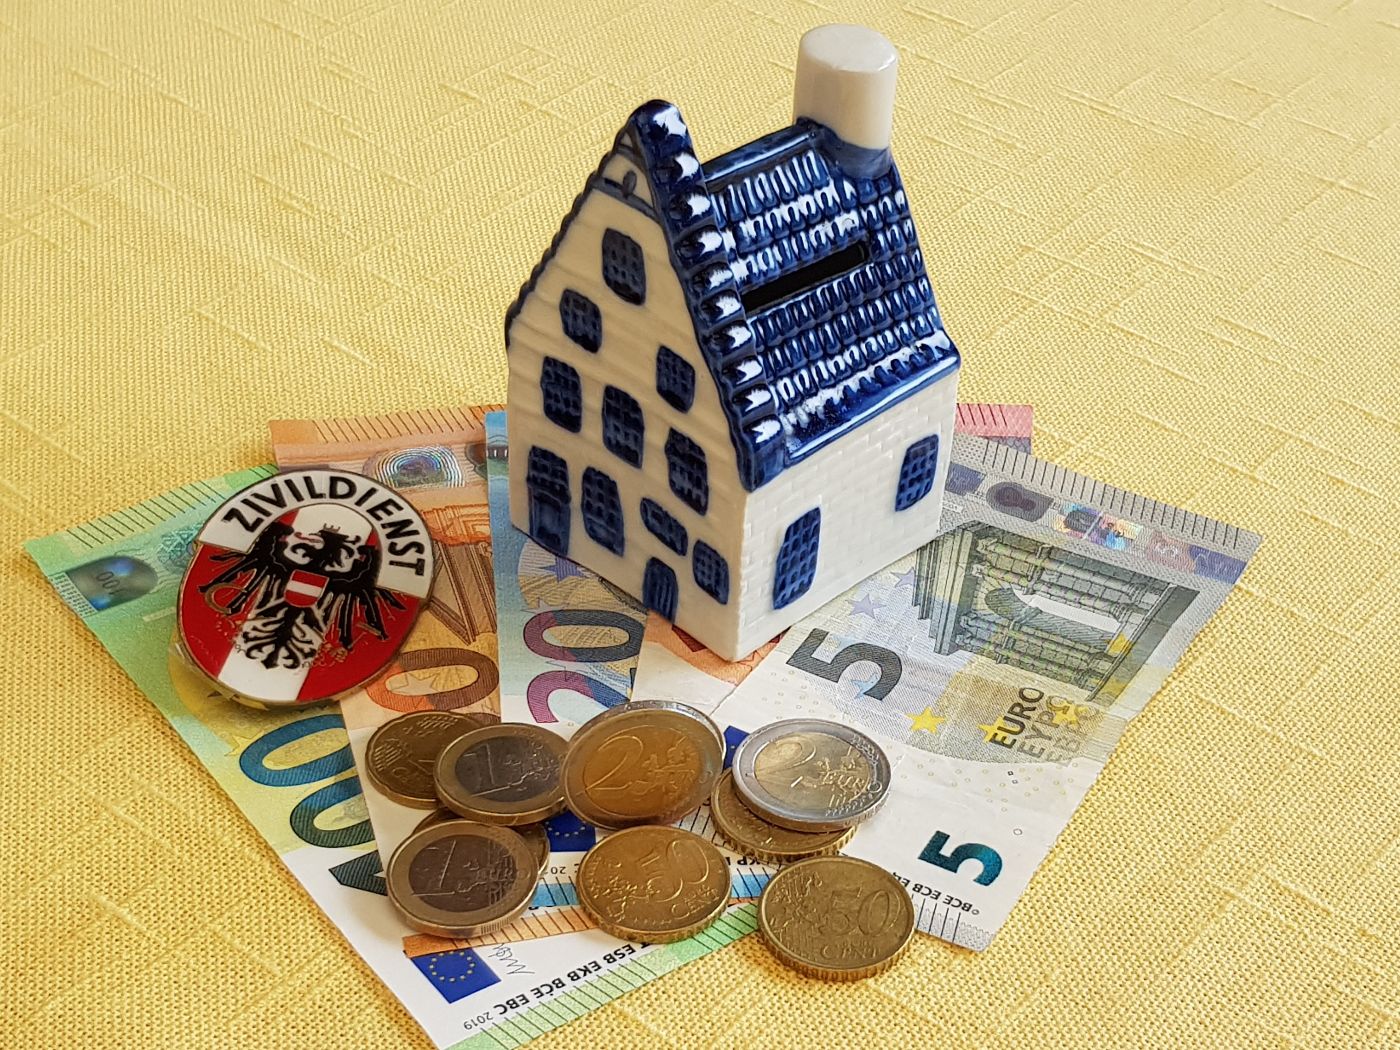 Kleines Keramik-Spielzeughaus steht auf Geldscheinen. Auf den Geldscheinen liegen Münzen. Die Fassade und der Rauchfang des Hauses sind weiß, die Tür, Fenster und das Dach sind blau.